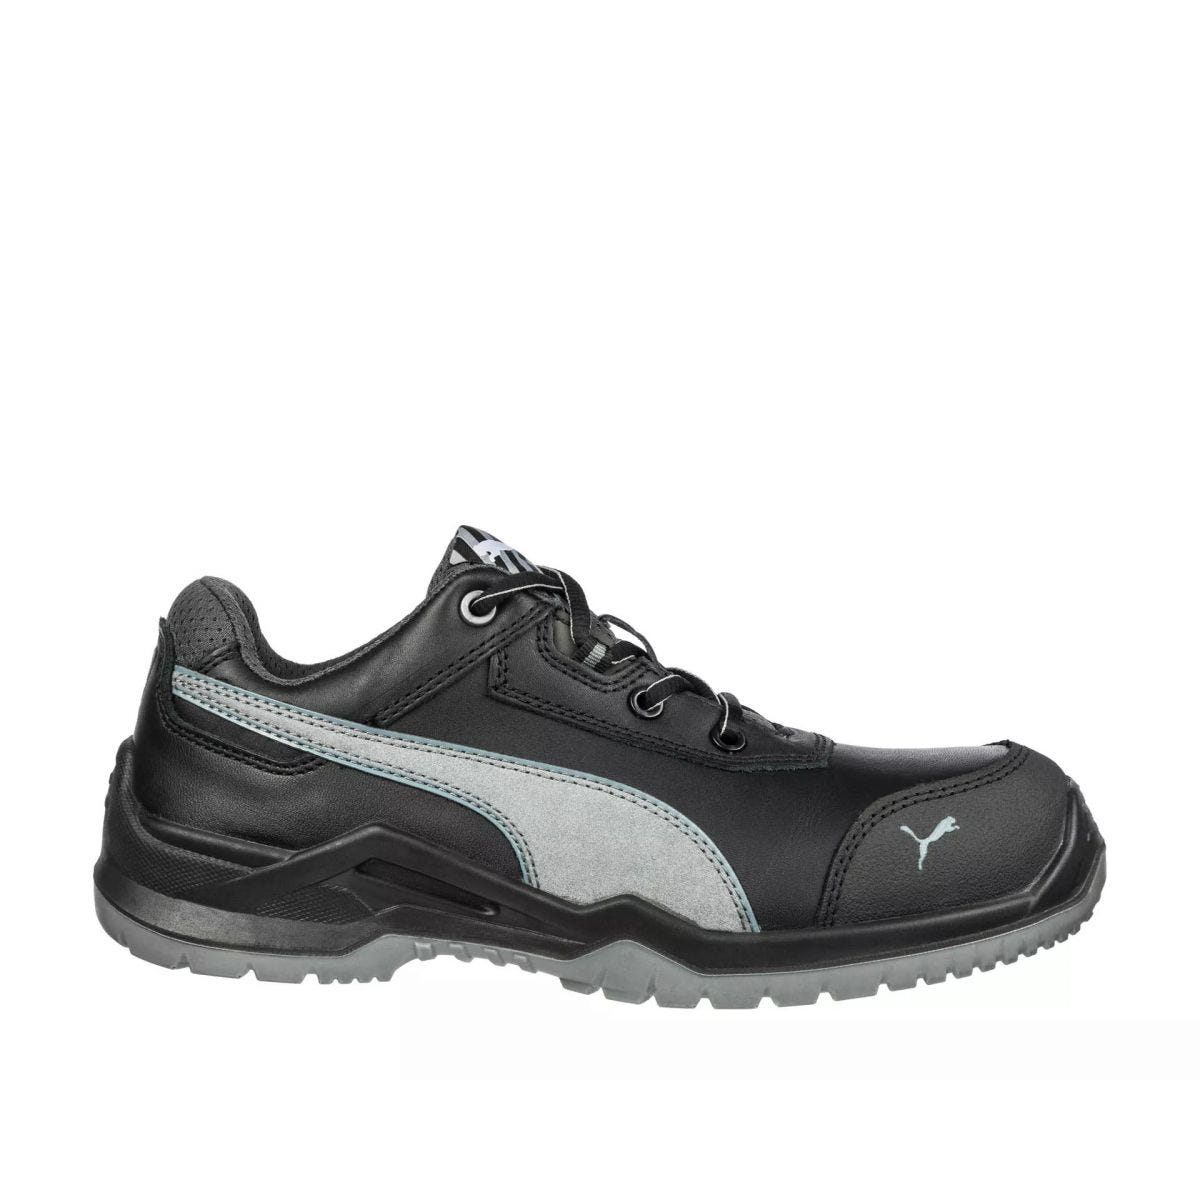 Chaussures de sécurité Argon RX low S3 ESD SRC noir - Puma - Taille 47 0